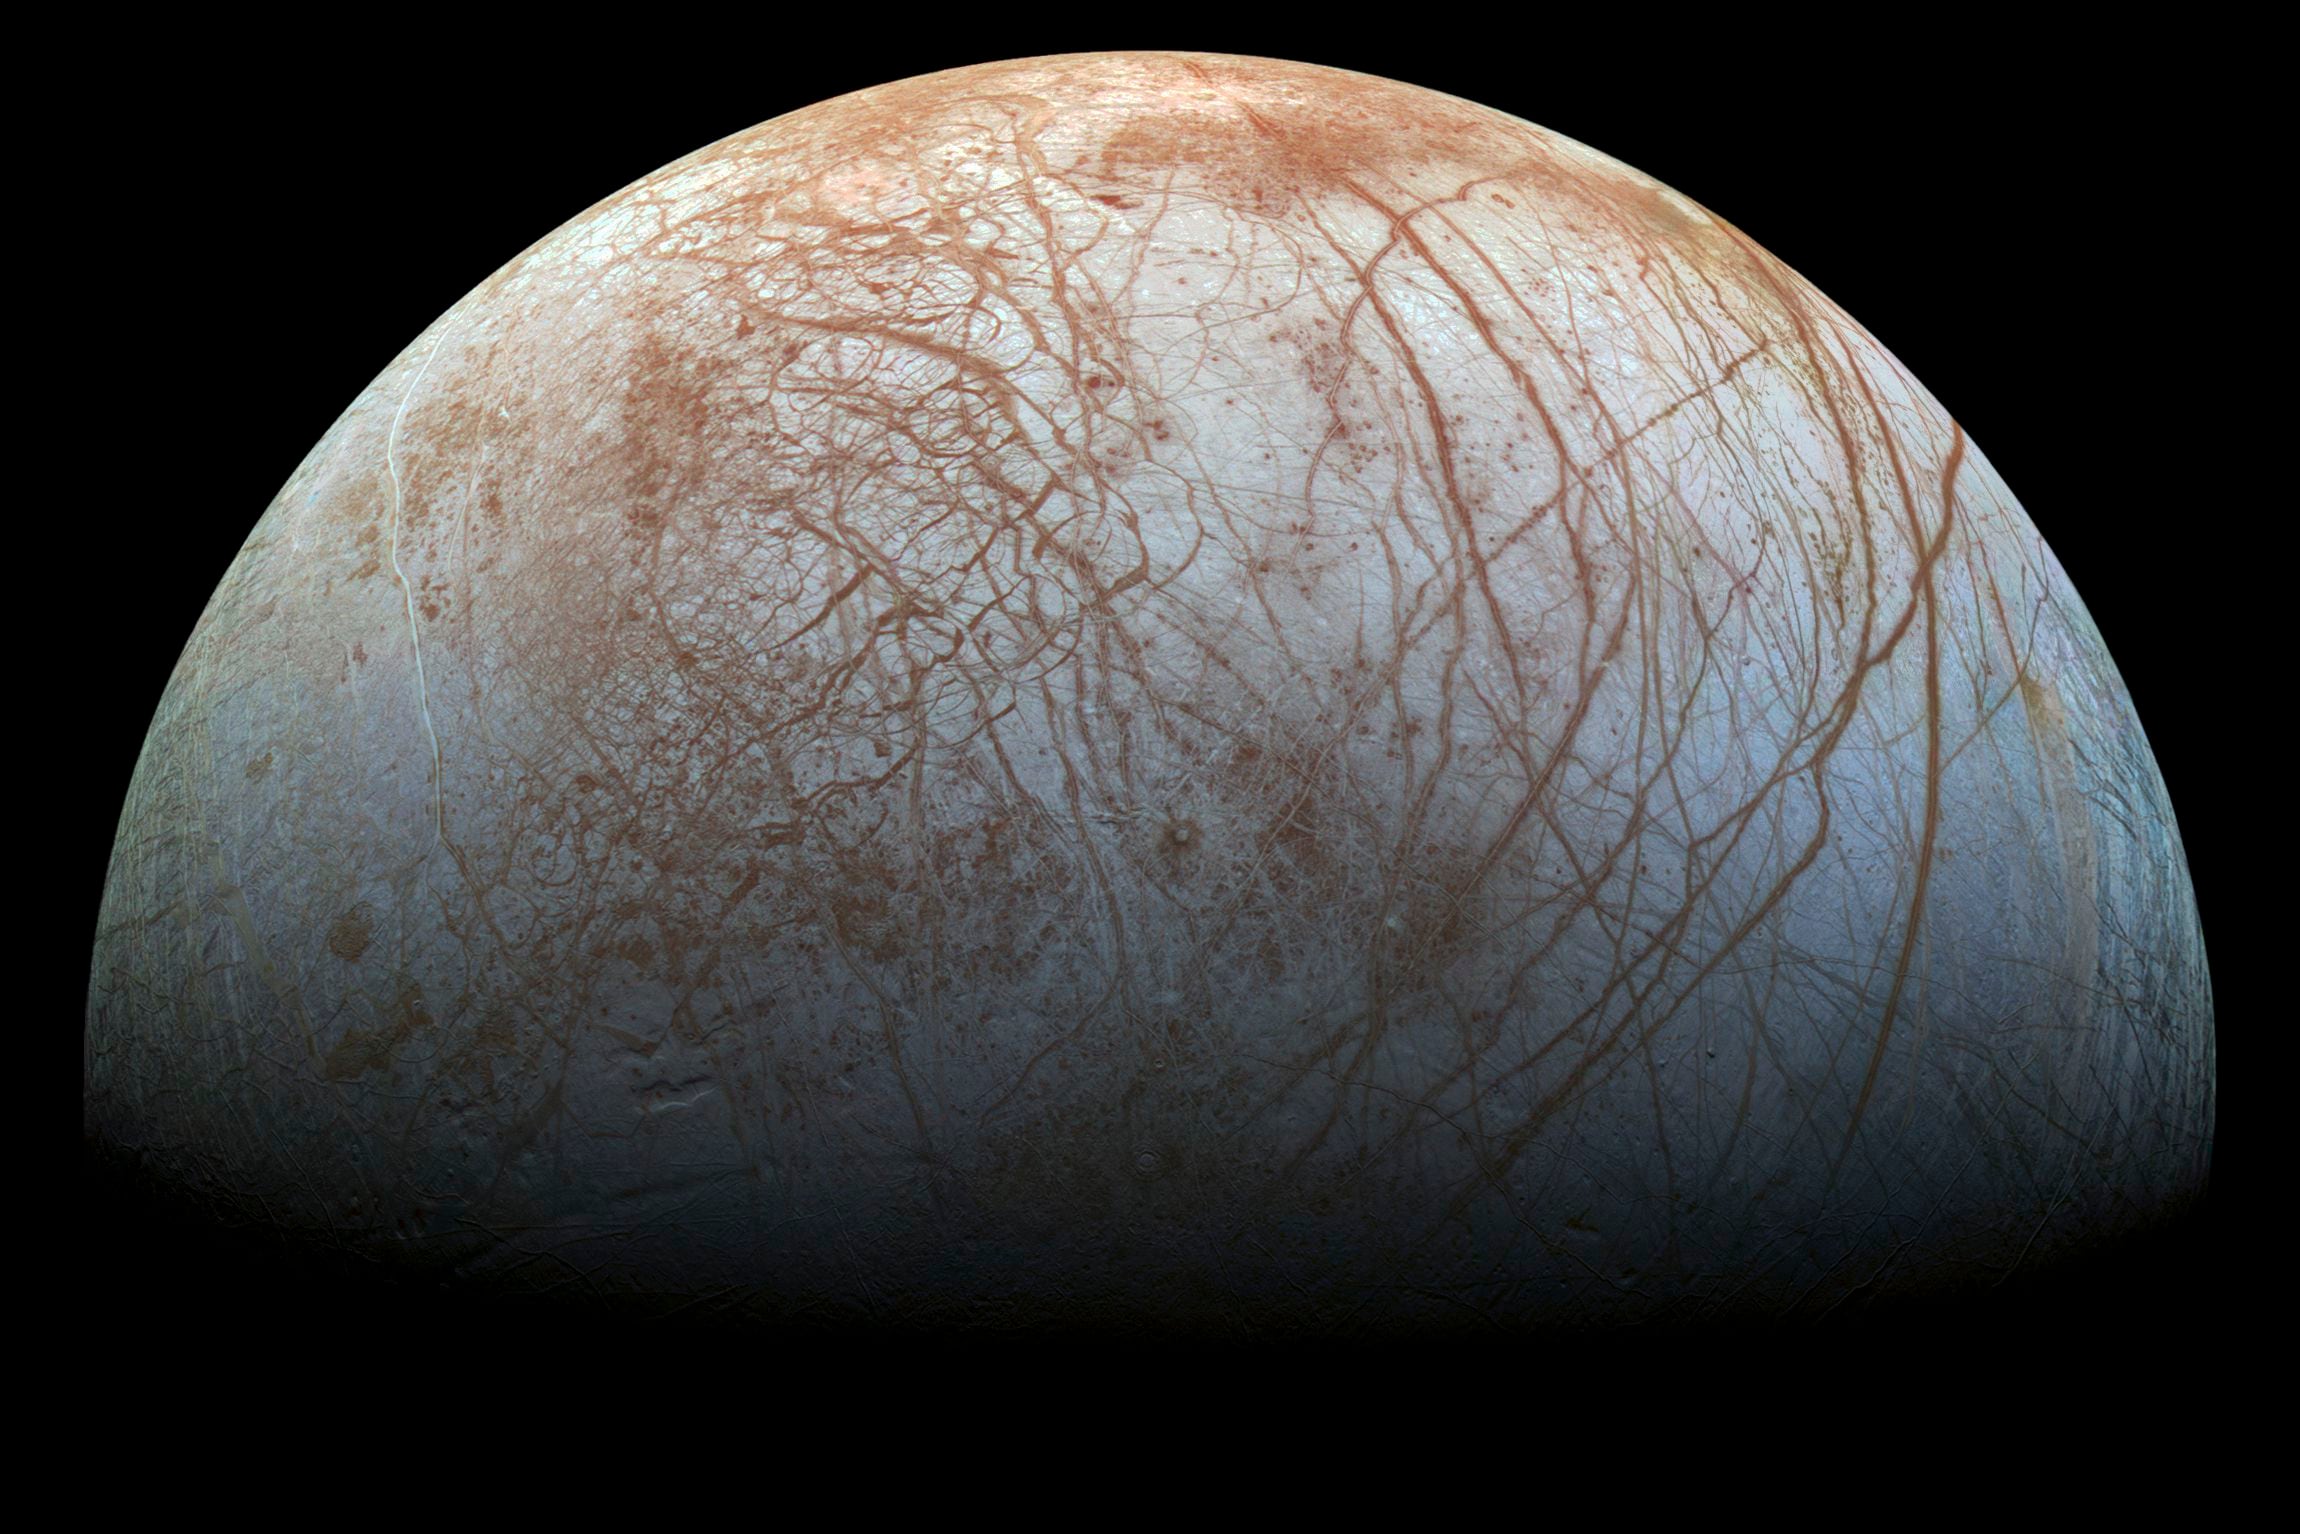 Esta imagen proveída por la NASA en el 2014 muestra la luna de Júpiter Europa, en una composición de fotos capturadas por la sonda espacial de la NASA Galileo a finales de los noventa.  (NASA/JPL-Caltech/SETI Institute vía AP)